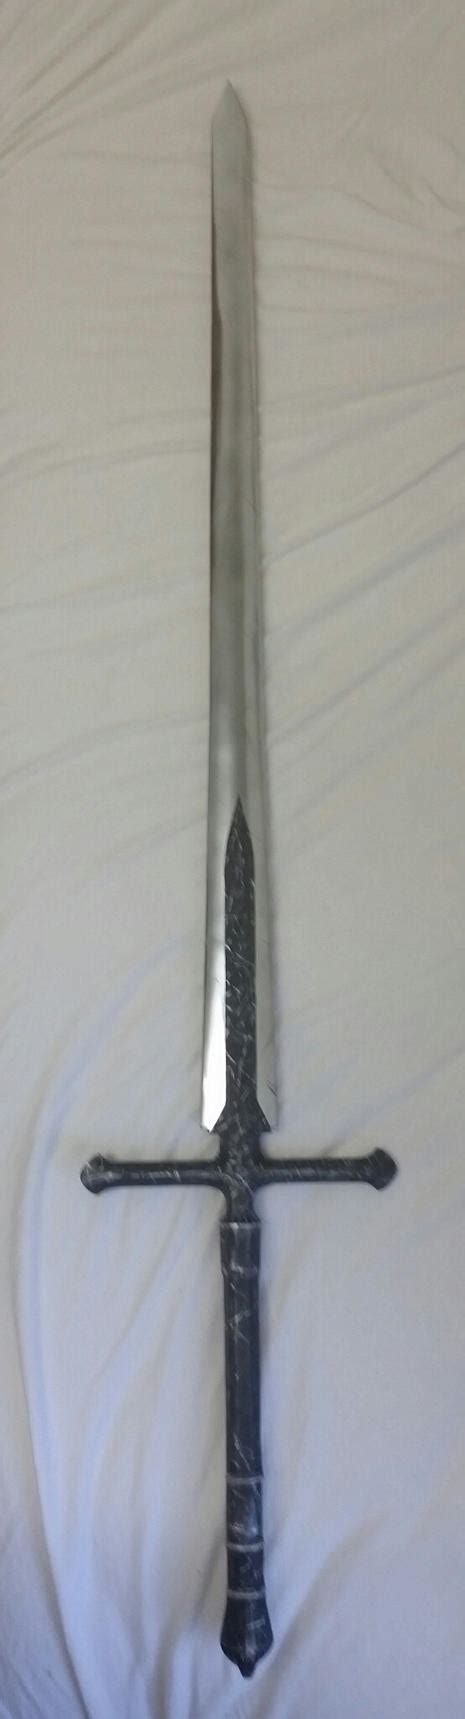 Silver Knight Straight Sword By Nolan192 On Deviantart